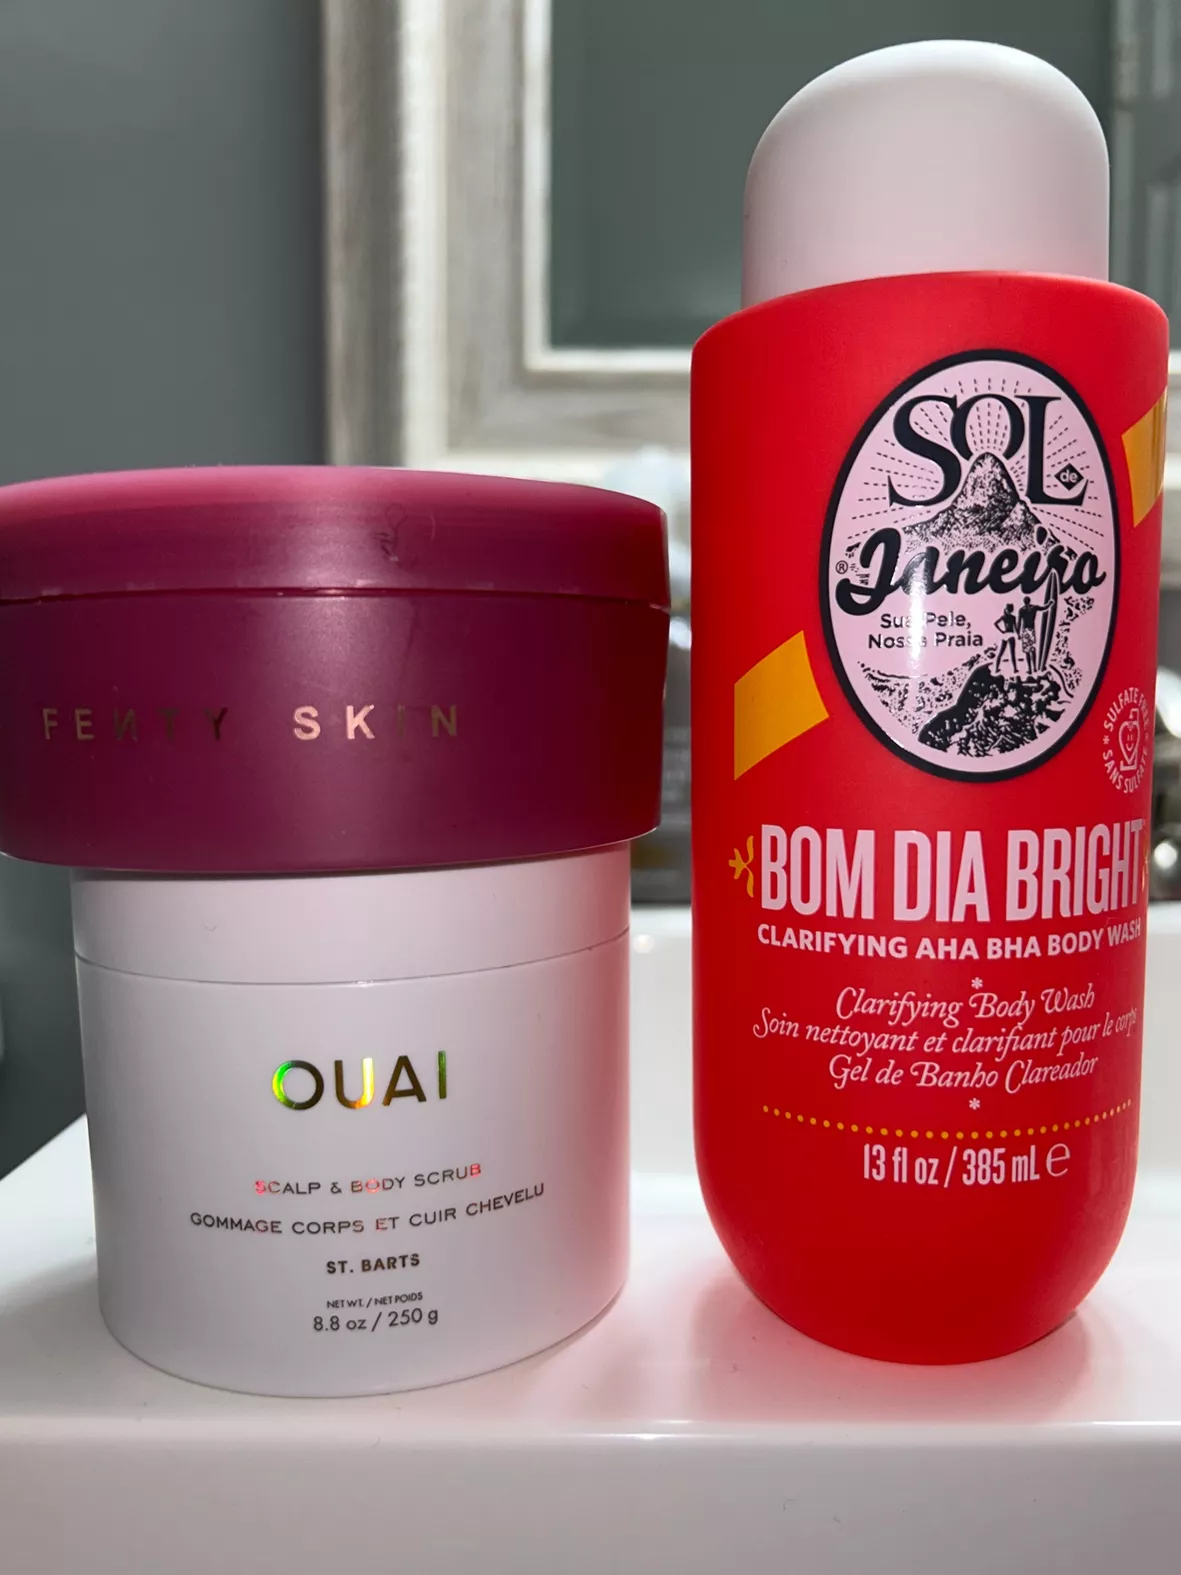 Sol de Janeiro Bom Dia Bright Clarifying Body Wash and Body Scrub review -  Reviewed